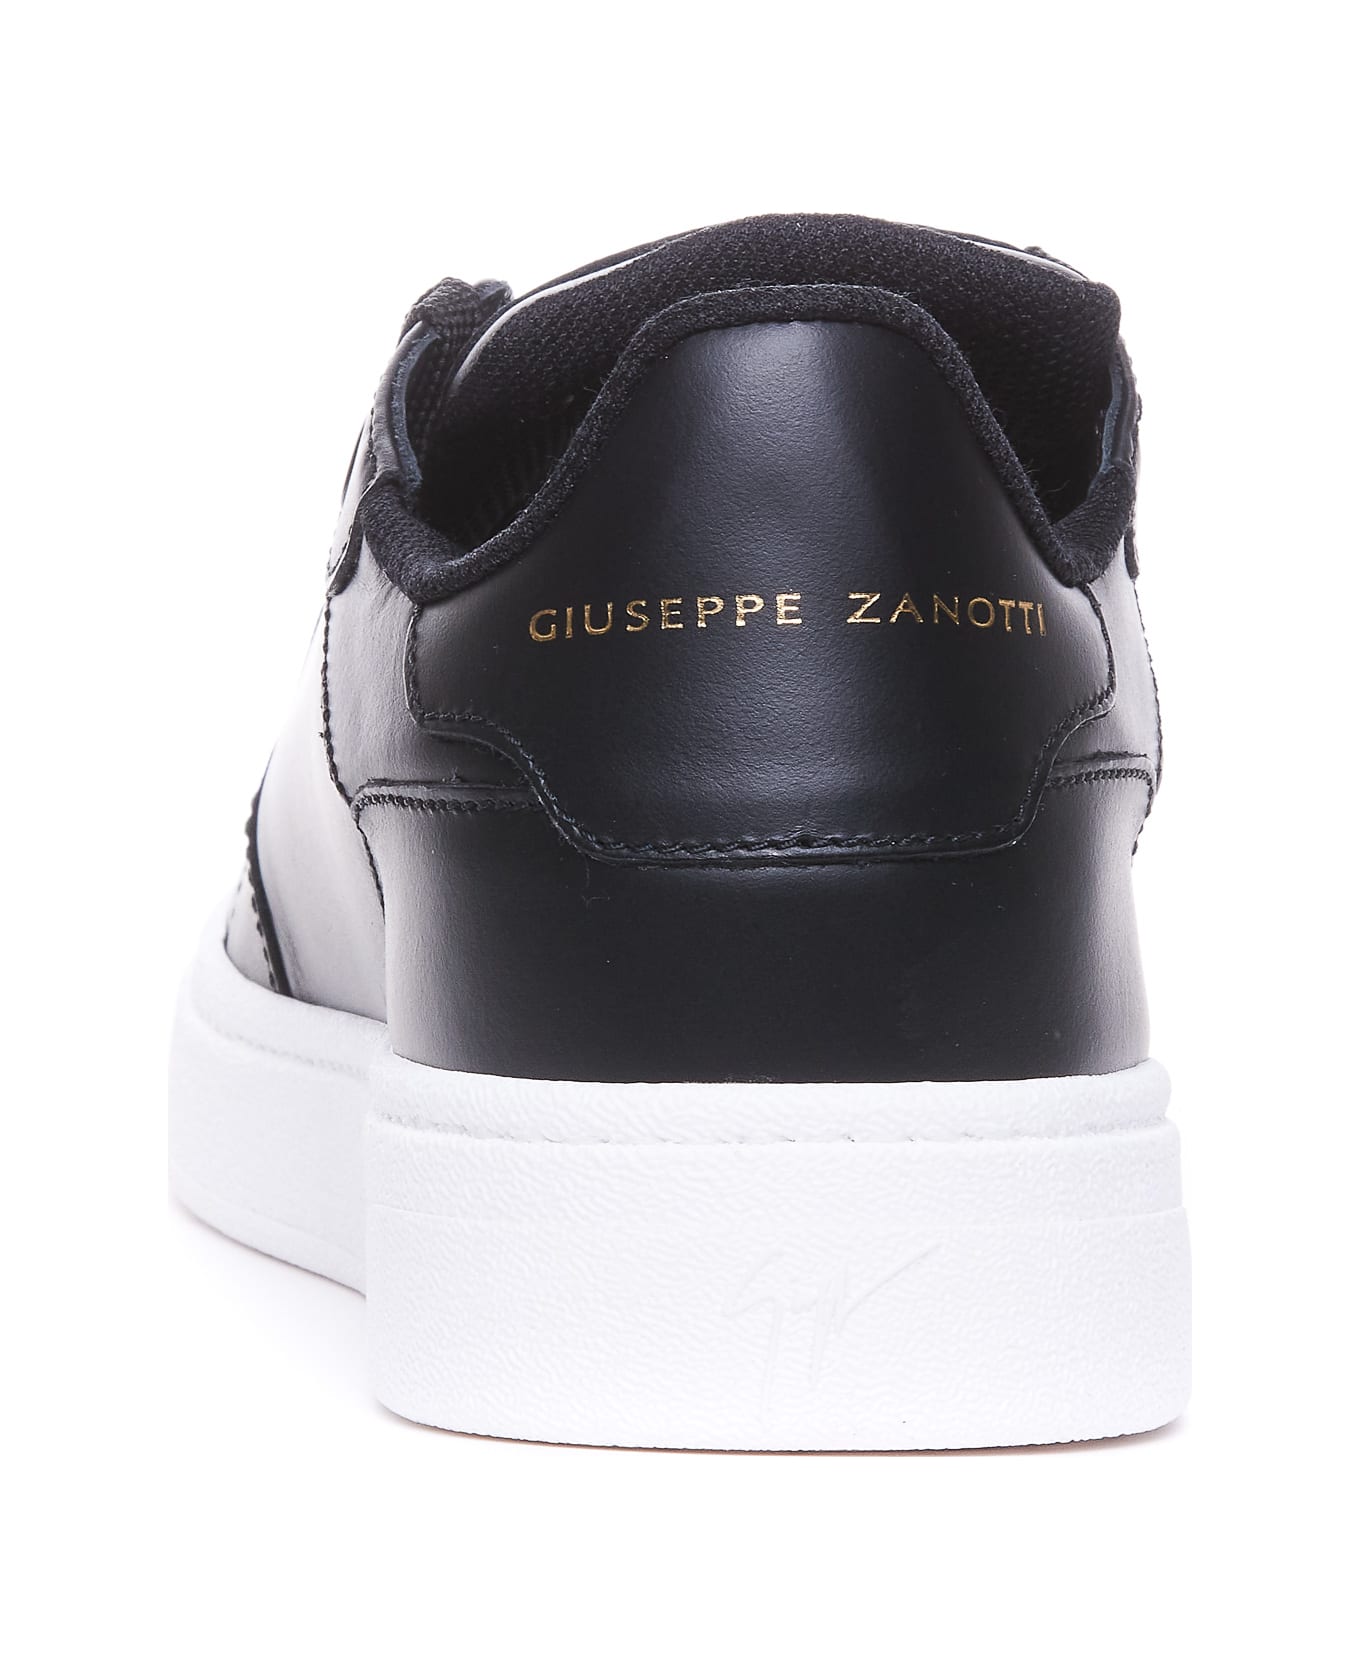 Giuseppe Zanotti Sneakers - Black スニーカー